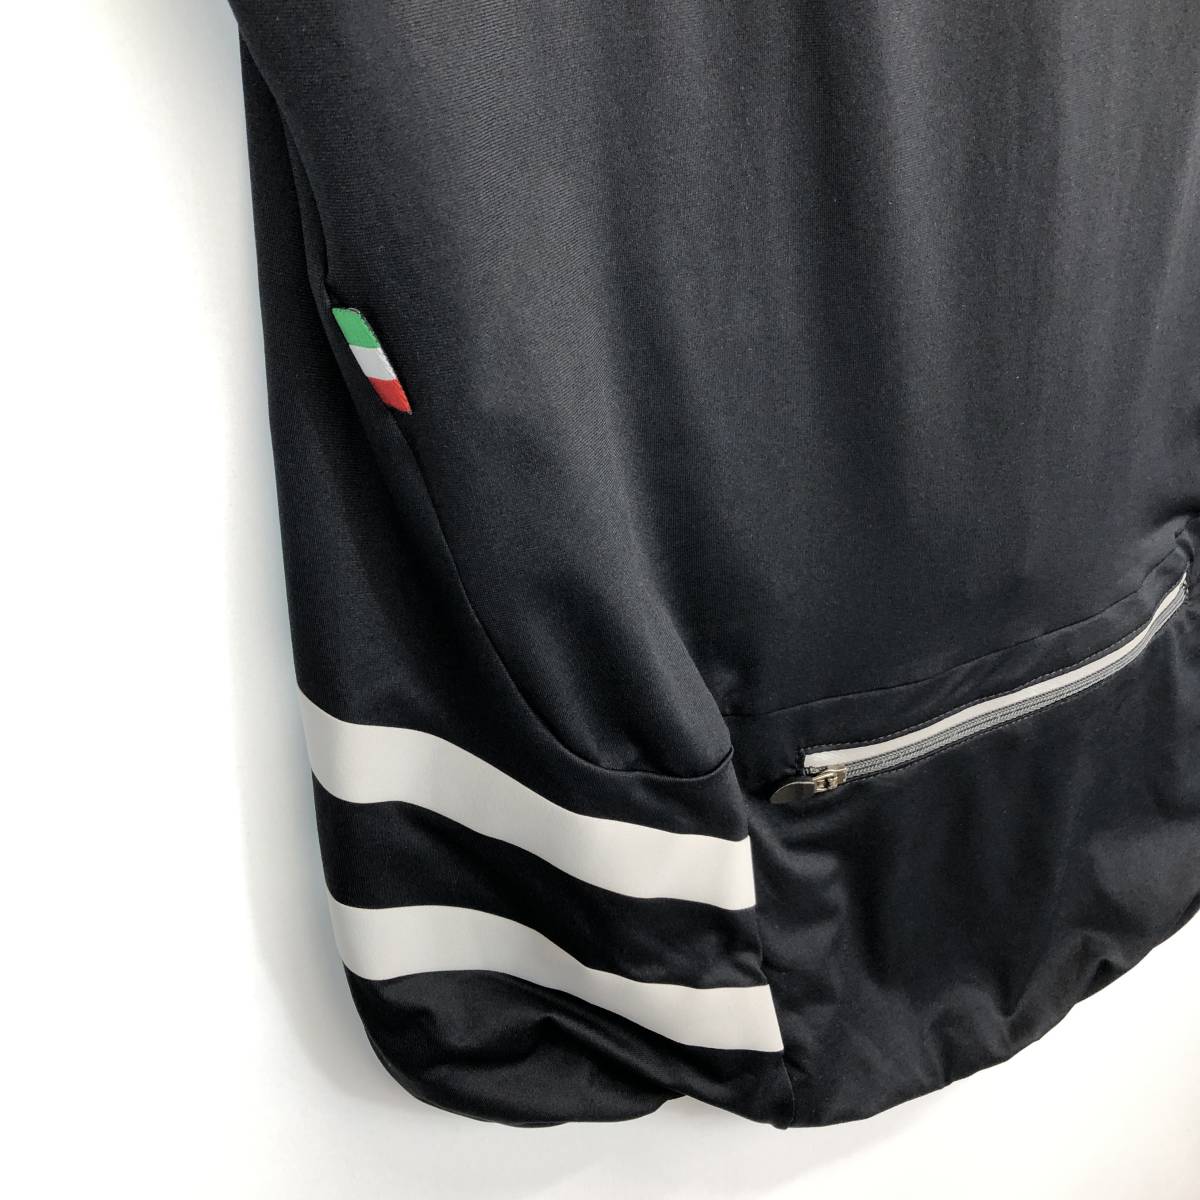 カンパニョーロ Campagnolo 半袖サイクルジャージ ブラック グレー XXLサイズ 2011モデル